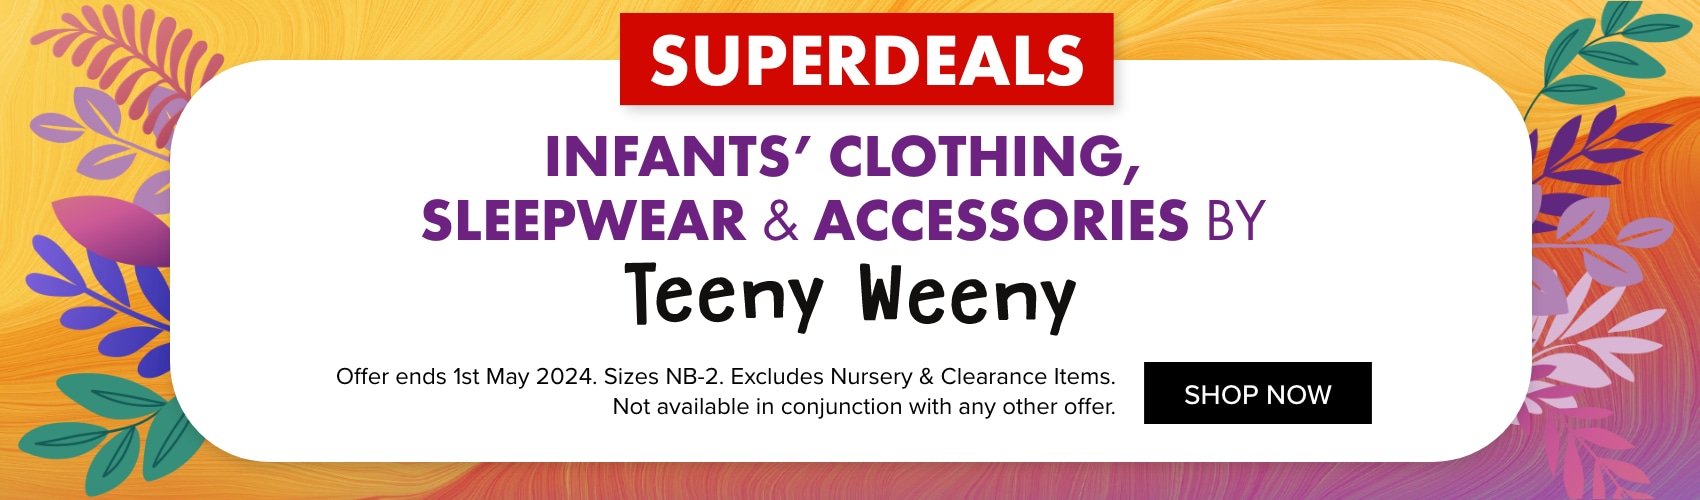 Teeny Weeny Infants' Clothing, Sleepwear & Accessories